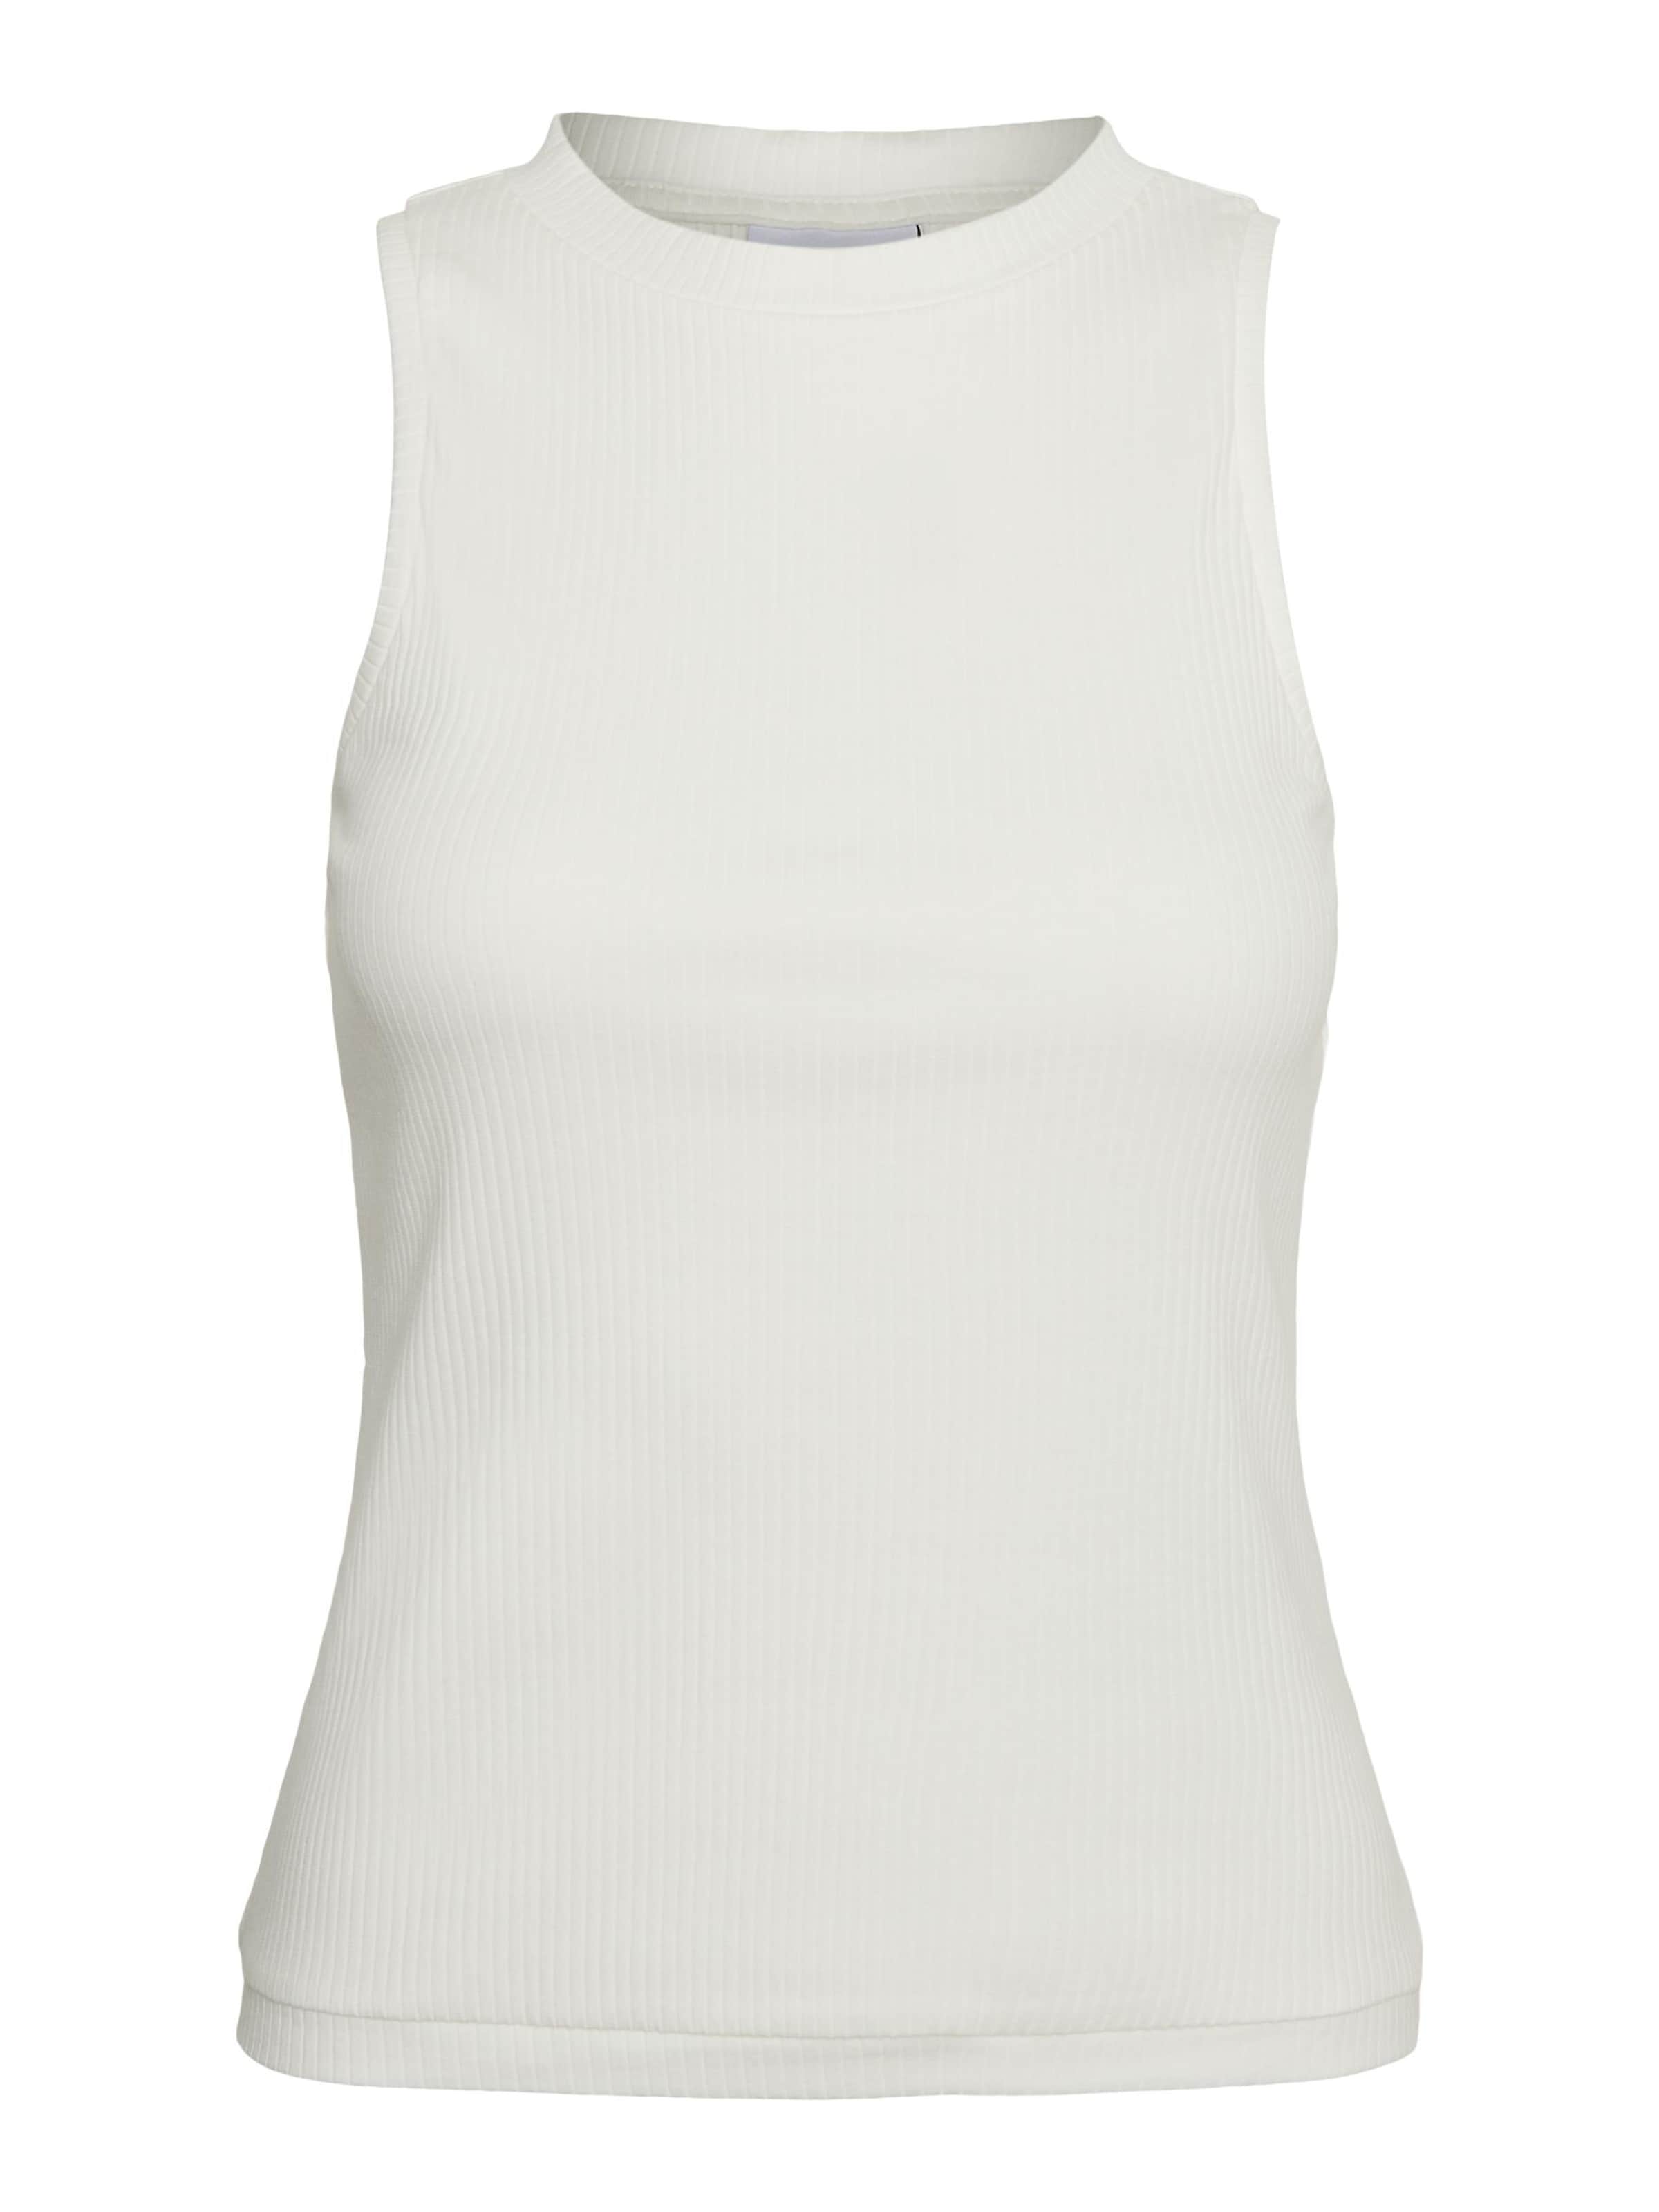 Frauen Shirts & Tops VERO MODA Top 'Lavender' in Weiß - KP83162